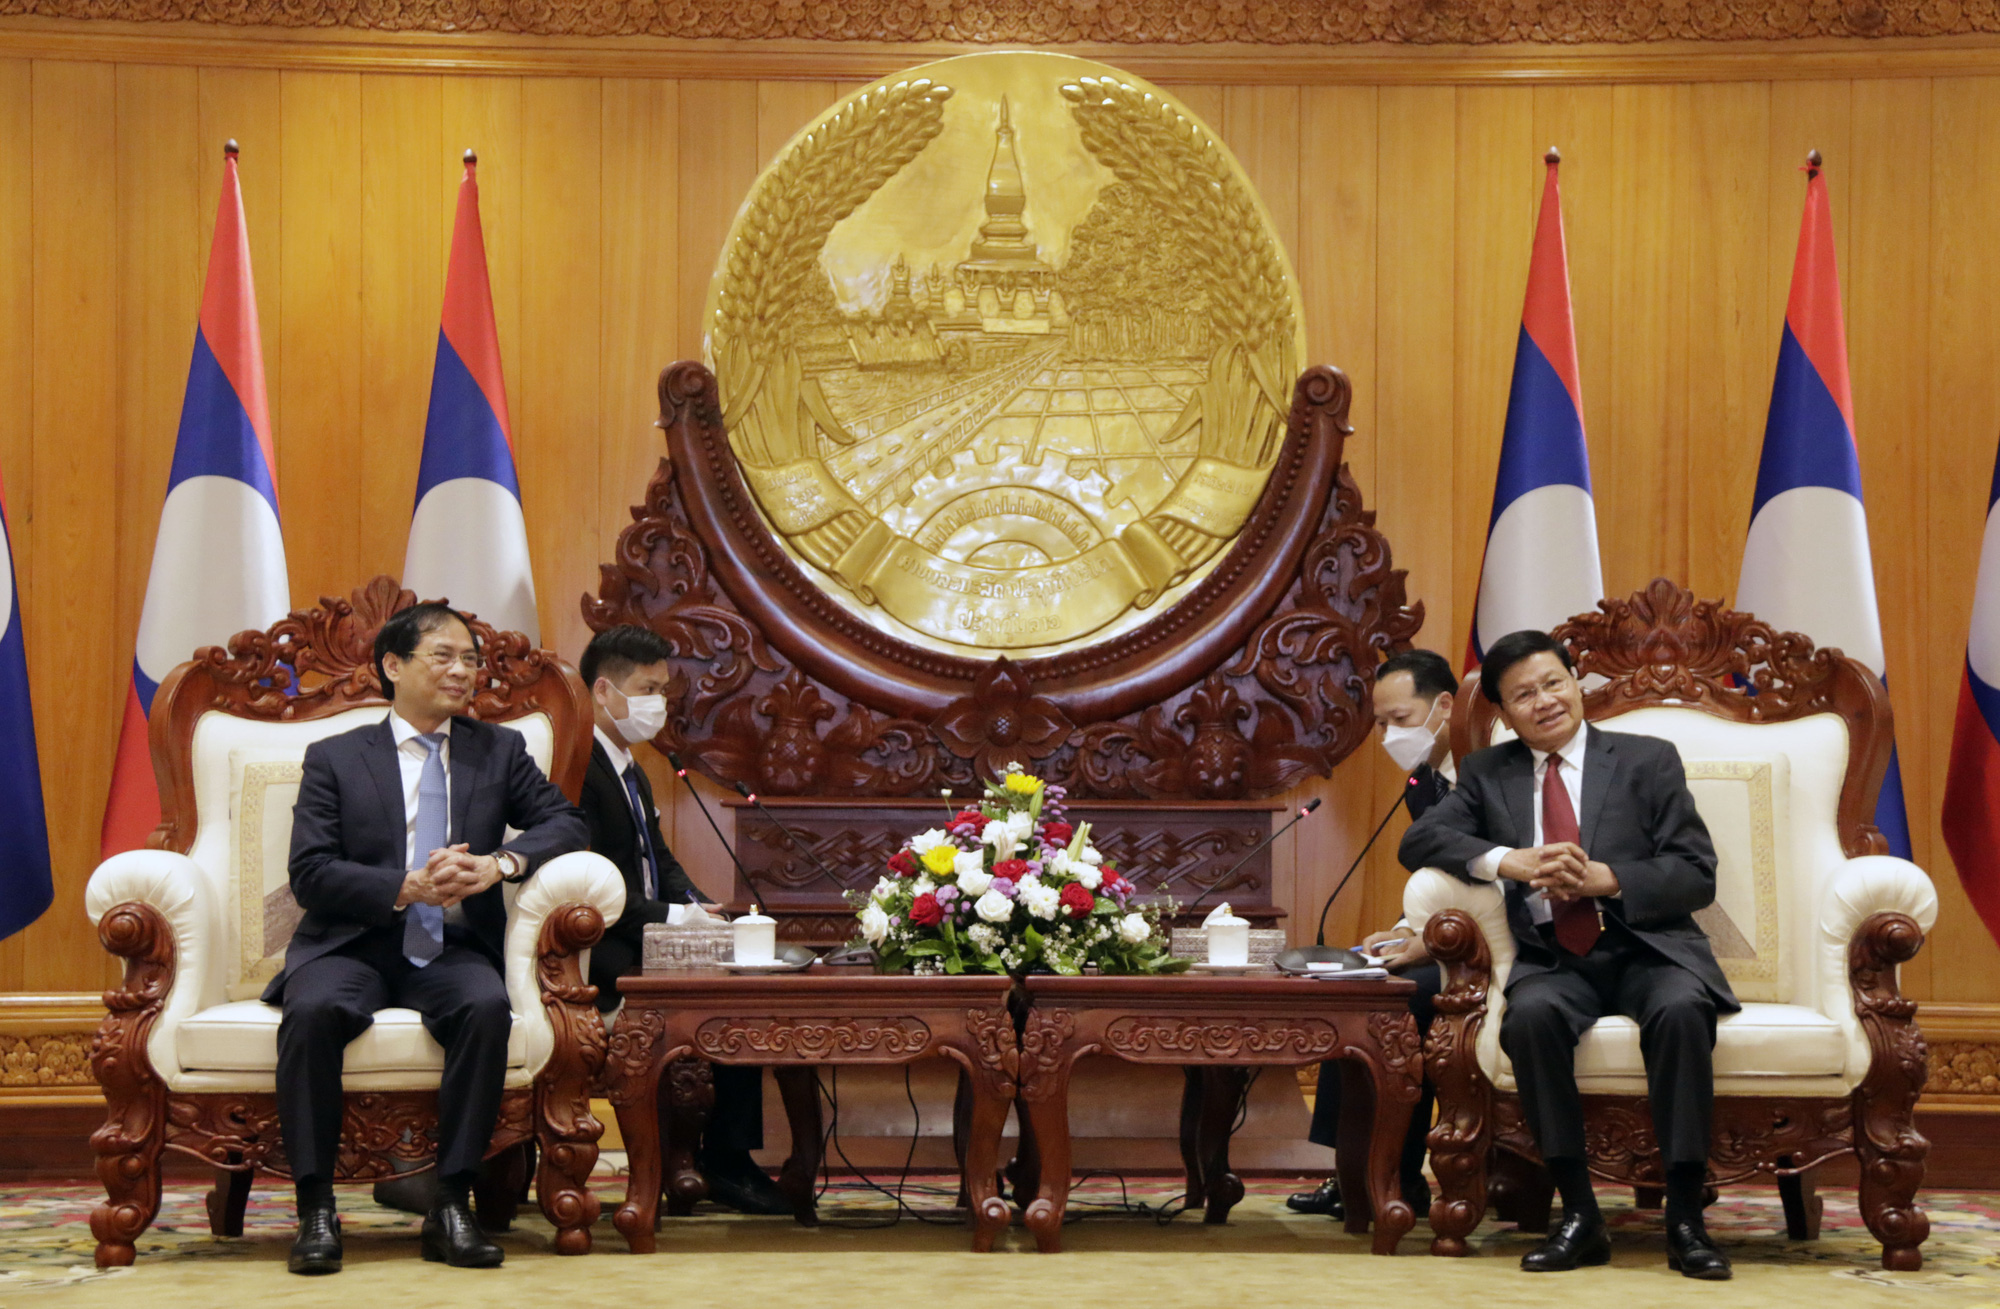 Bộ trưởng Bộ Ngoại giao Bùi Thanh Sơn chào xã giao lãnh đạo cấp cao Lào - Ảnh 1.